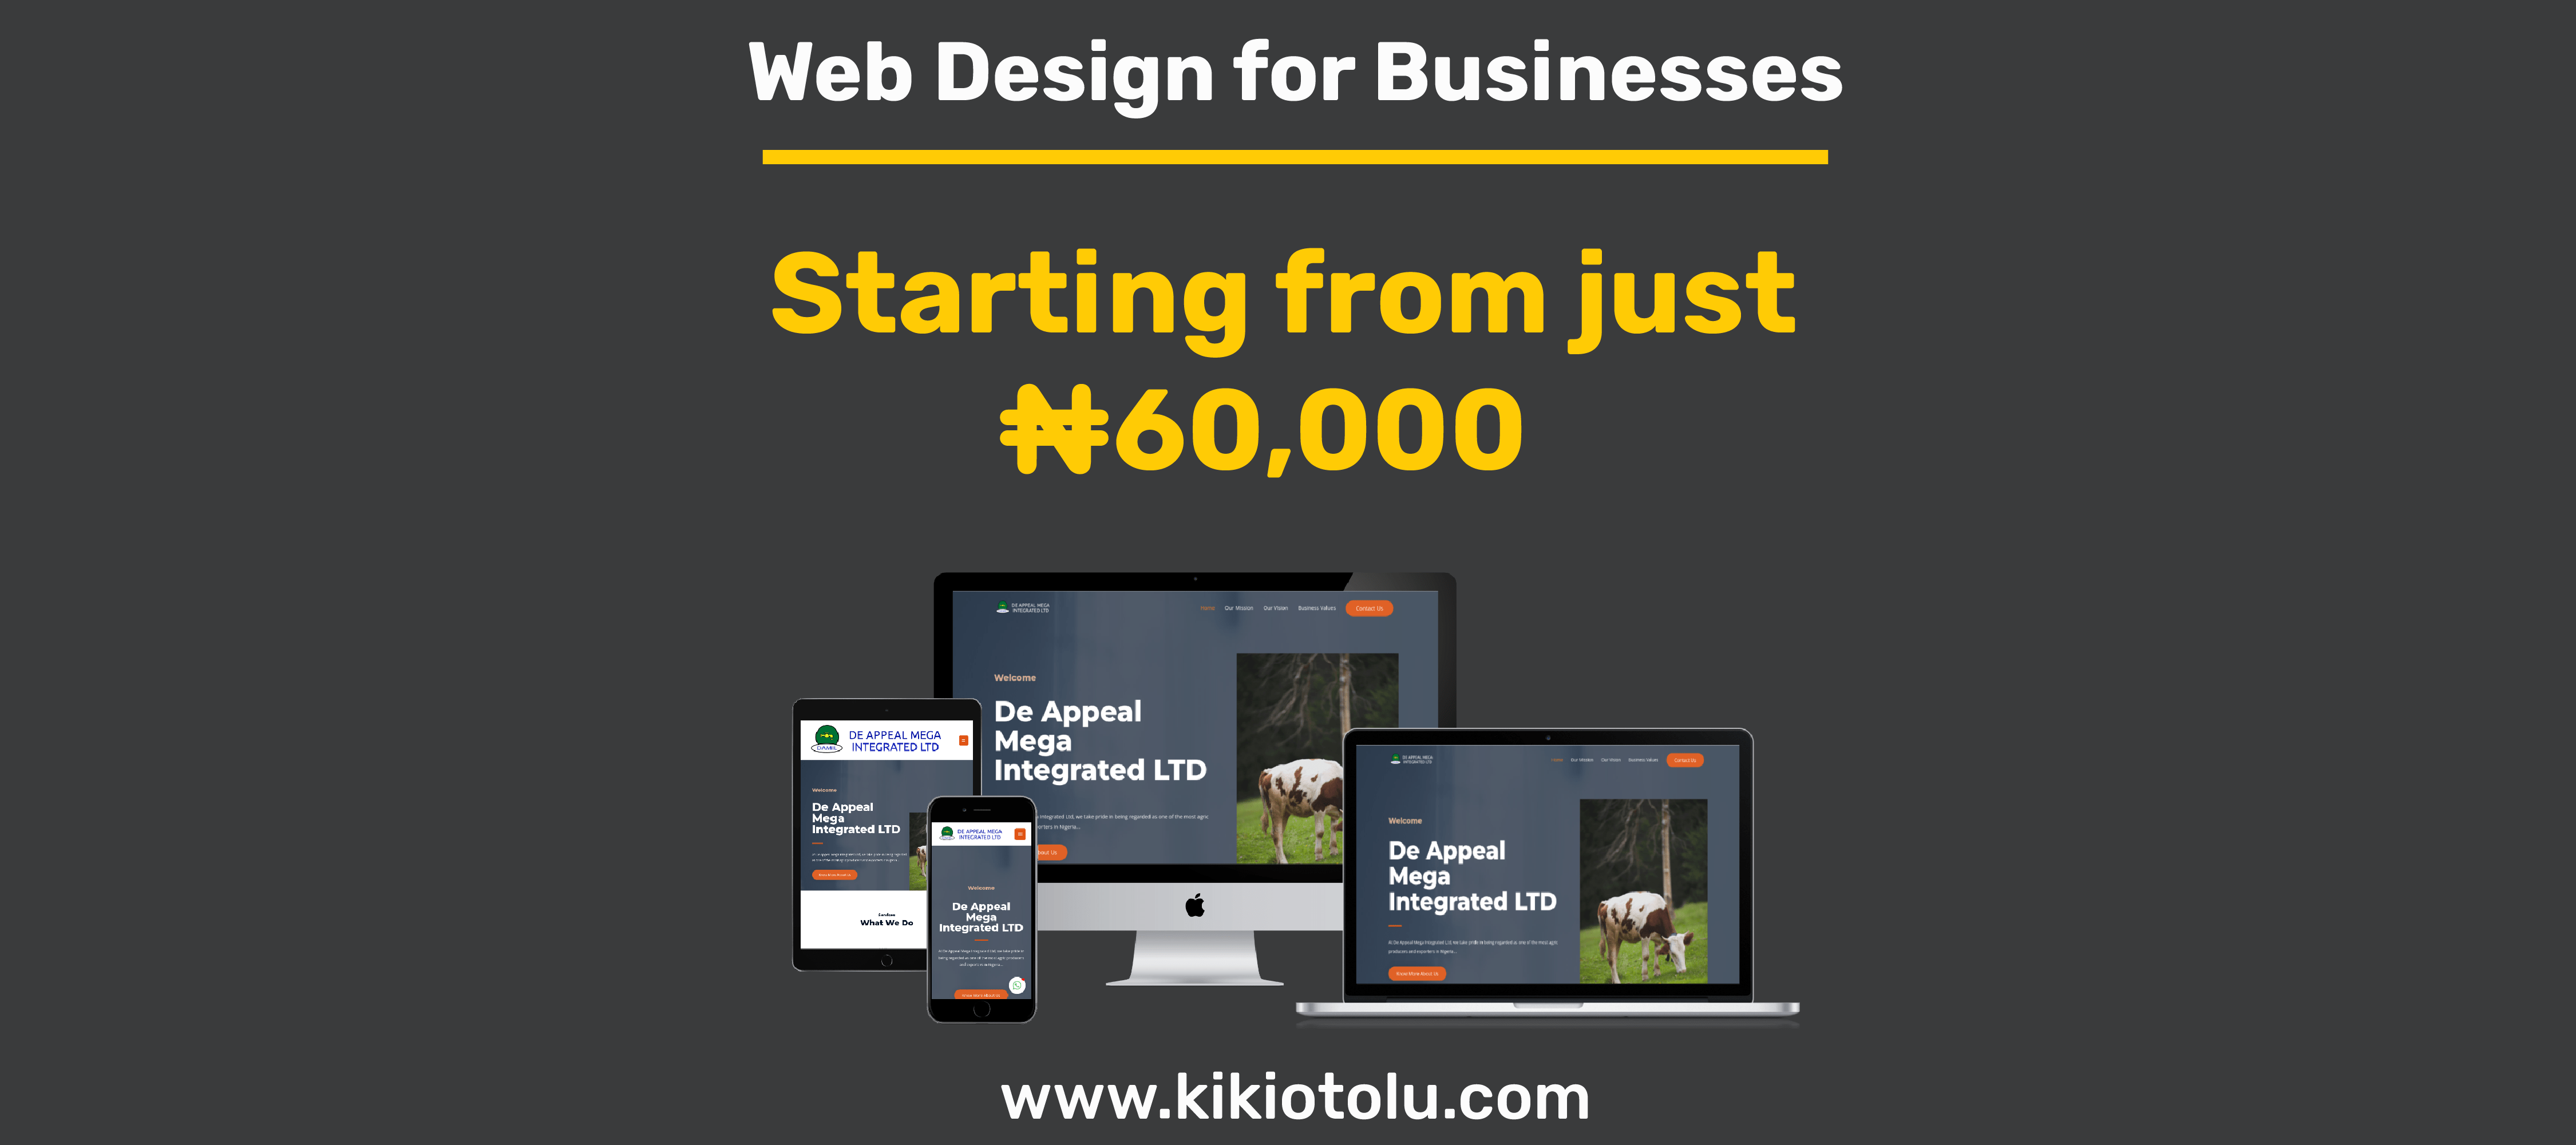 kikiotolu solutions web design